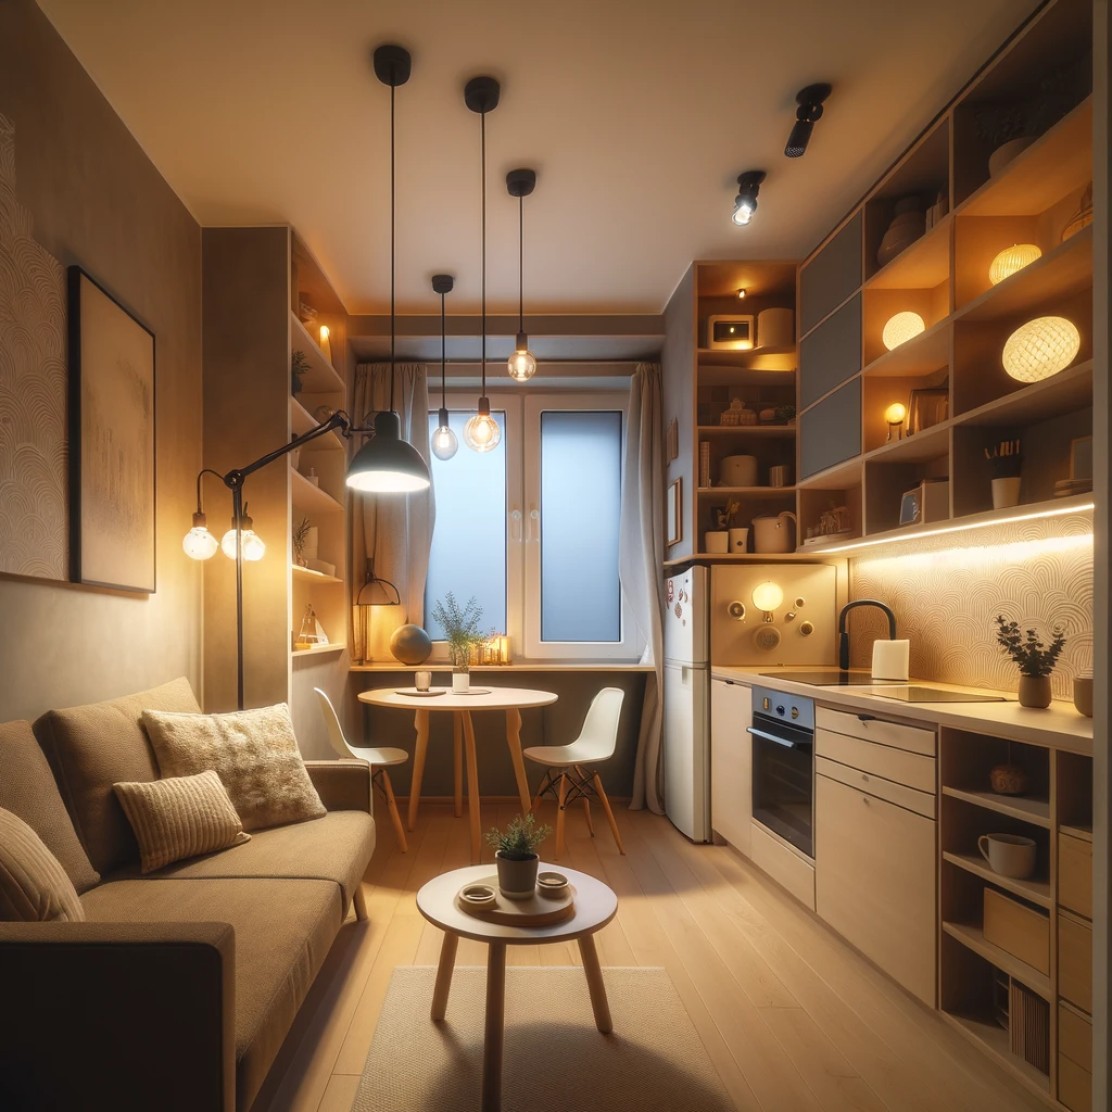 Jak wybrać oświetlenie do małego mieszkania? – Praktyczne porady